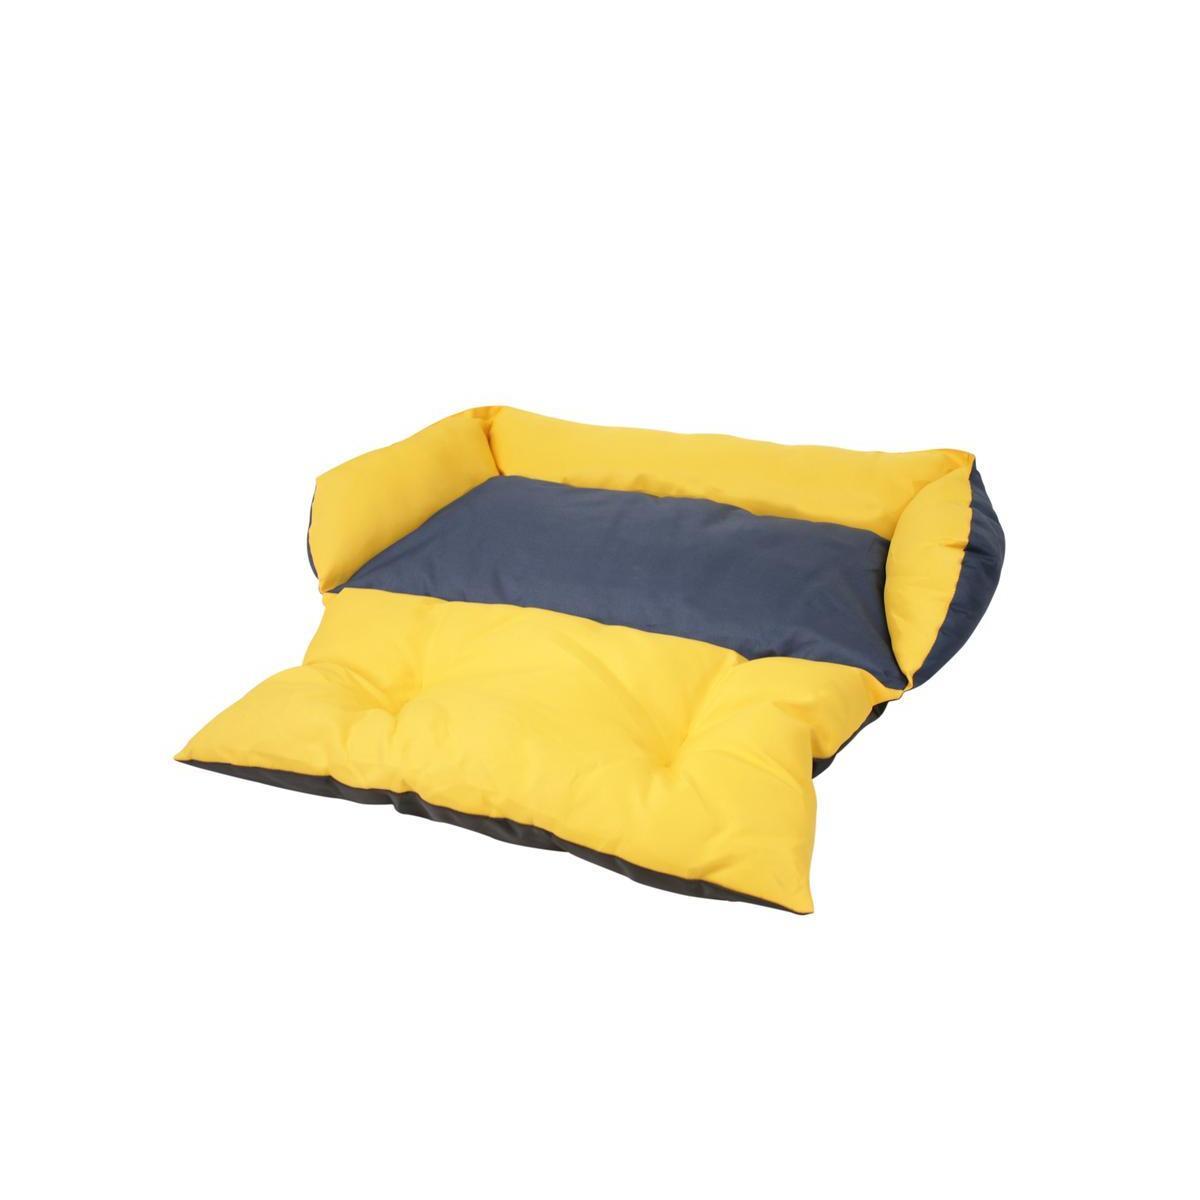 Canapé-lit imperméable pour chien ou chat - 55 x 33 x 15 cm - Différents modèles - Jaune, noir